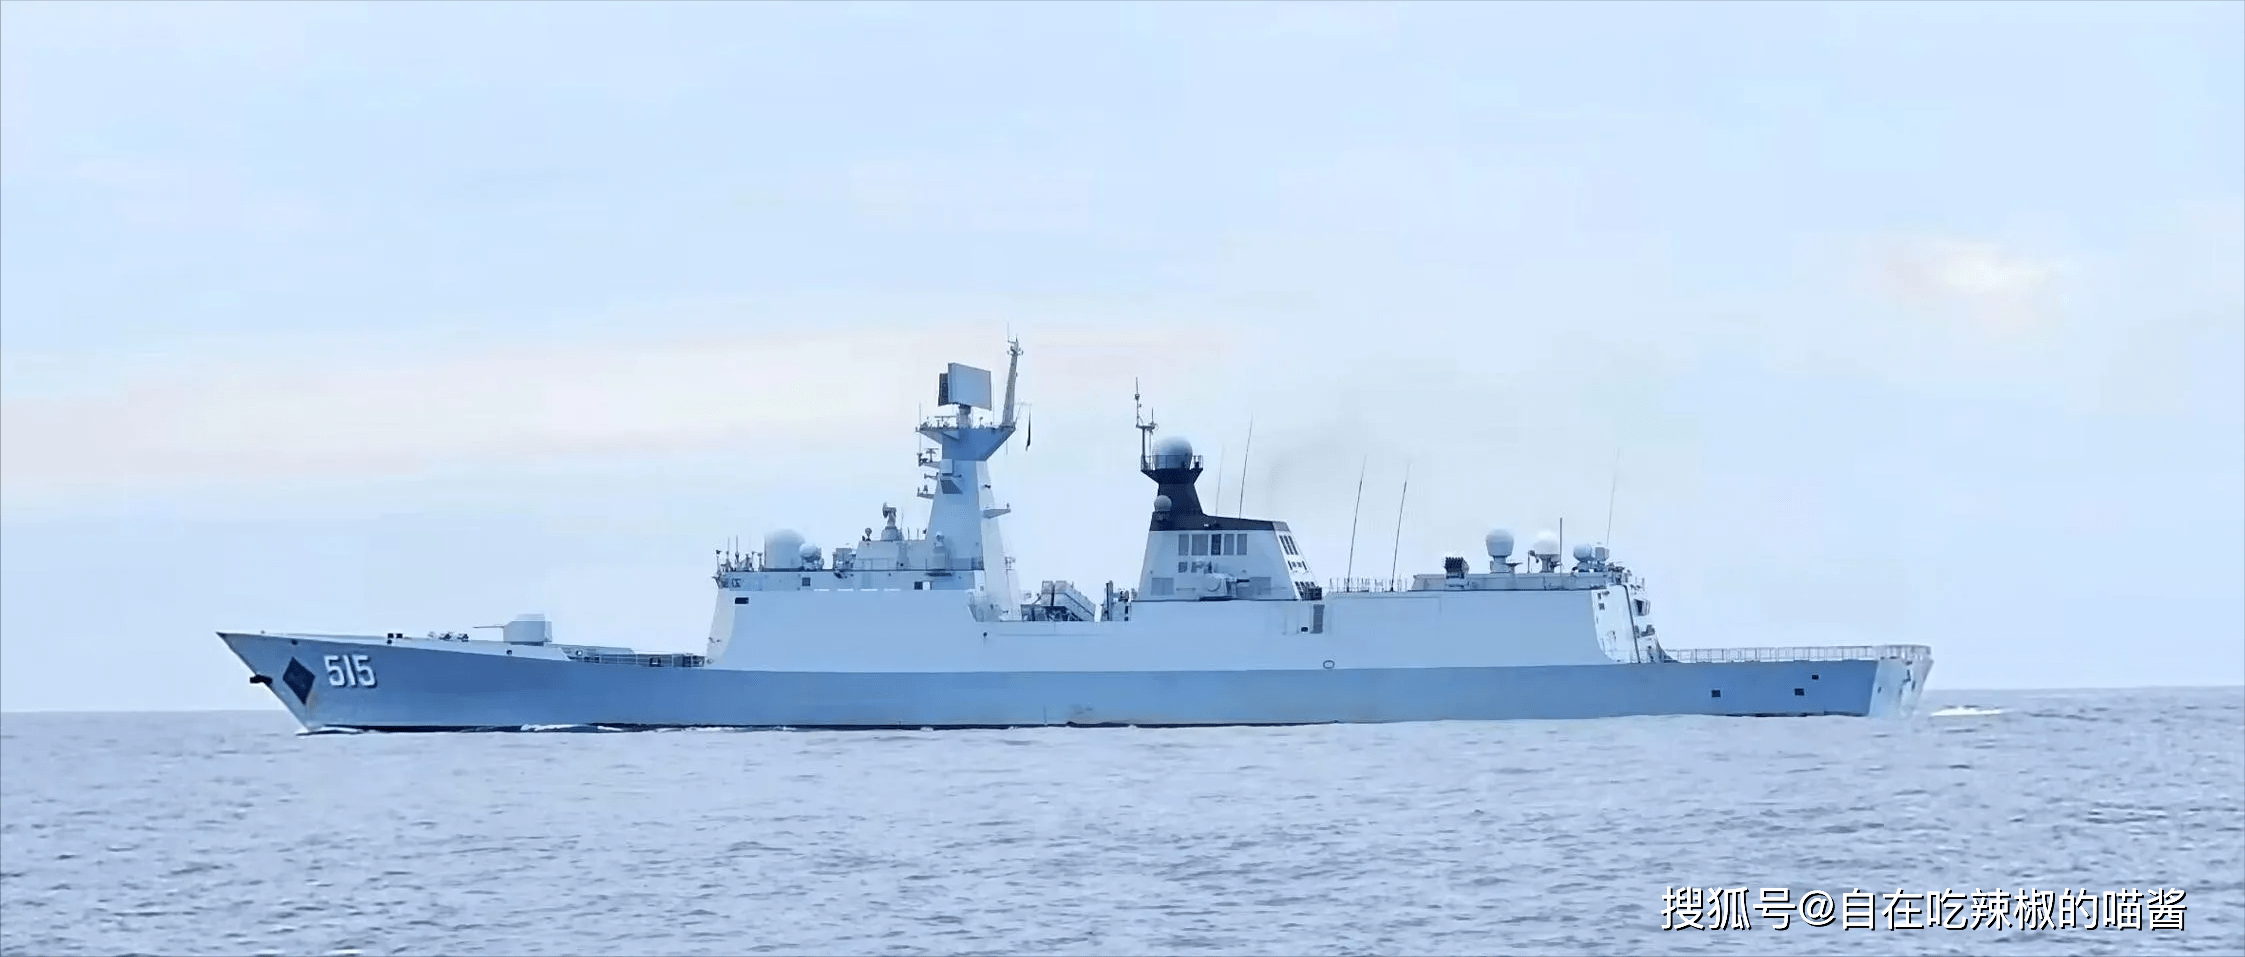 中国武器历史篇——053h型护卫舰515厦门号